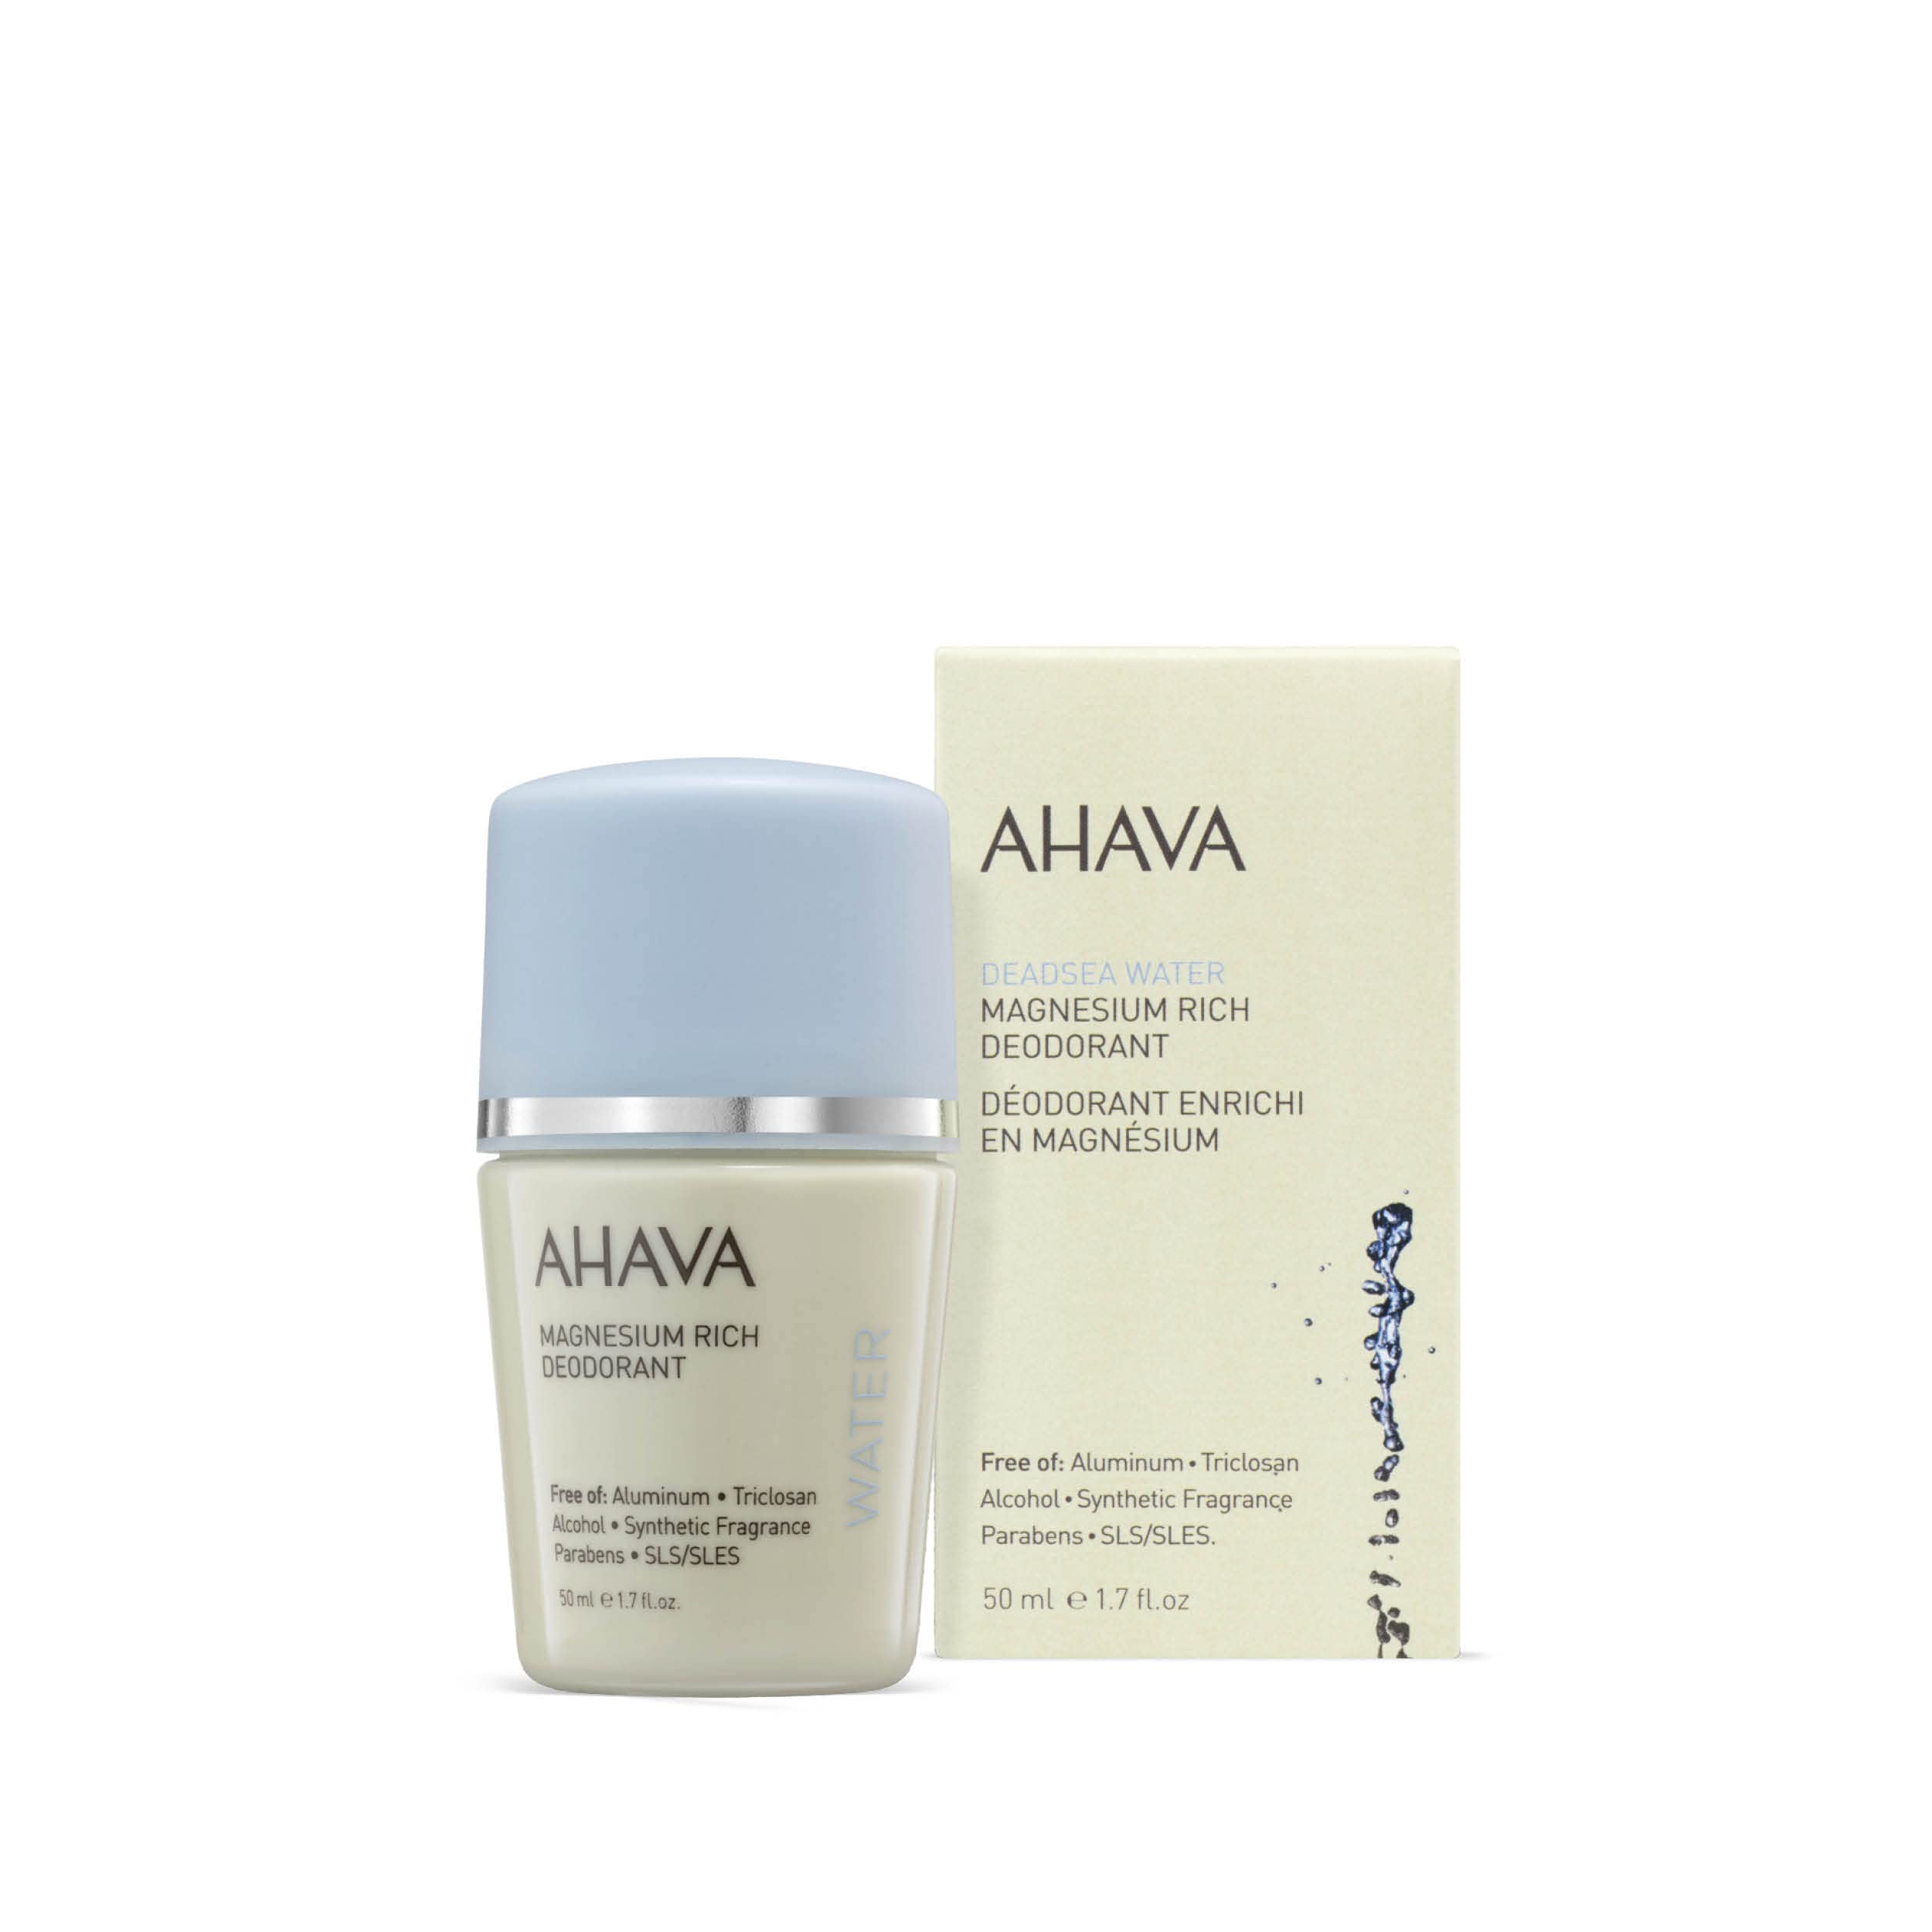 AHAVA Dead Sea Mineral Roll-On Woment’s Deodorant, 50ml/1.7 Fl Oz